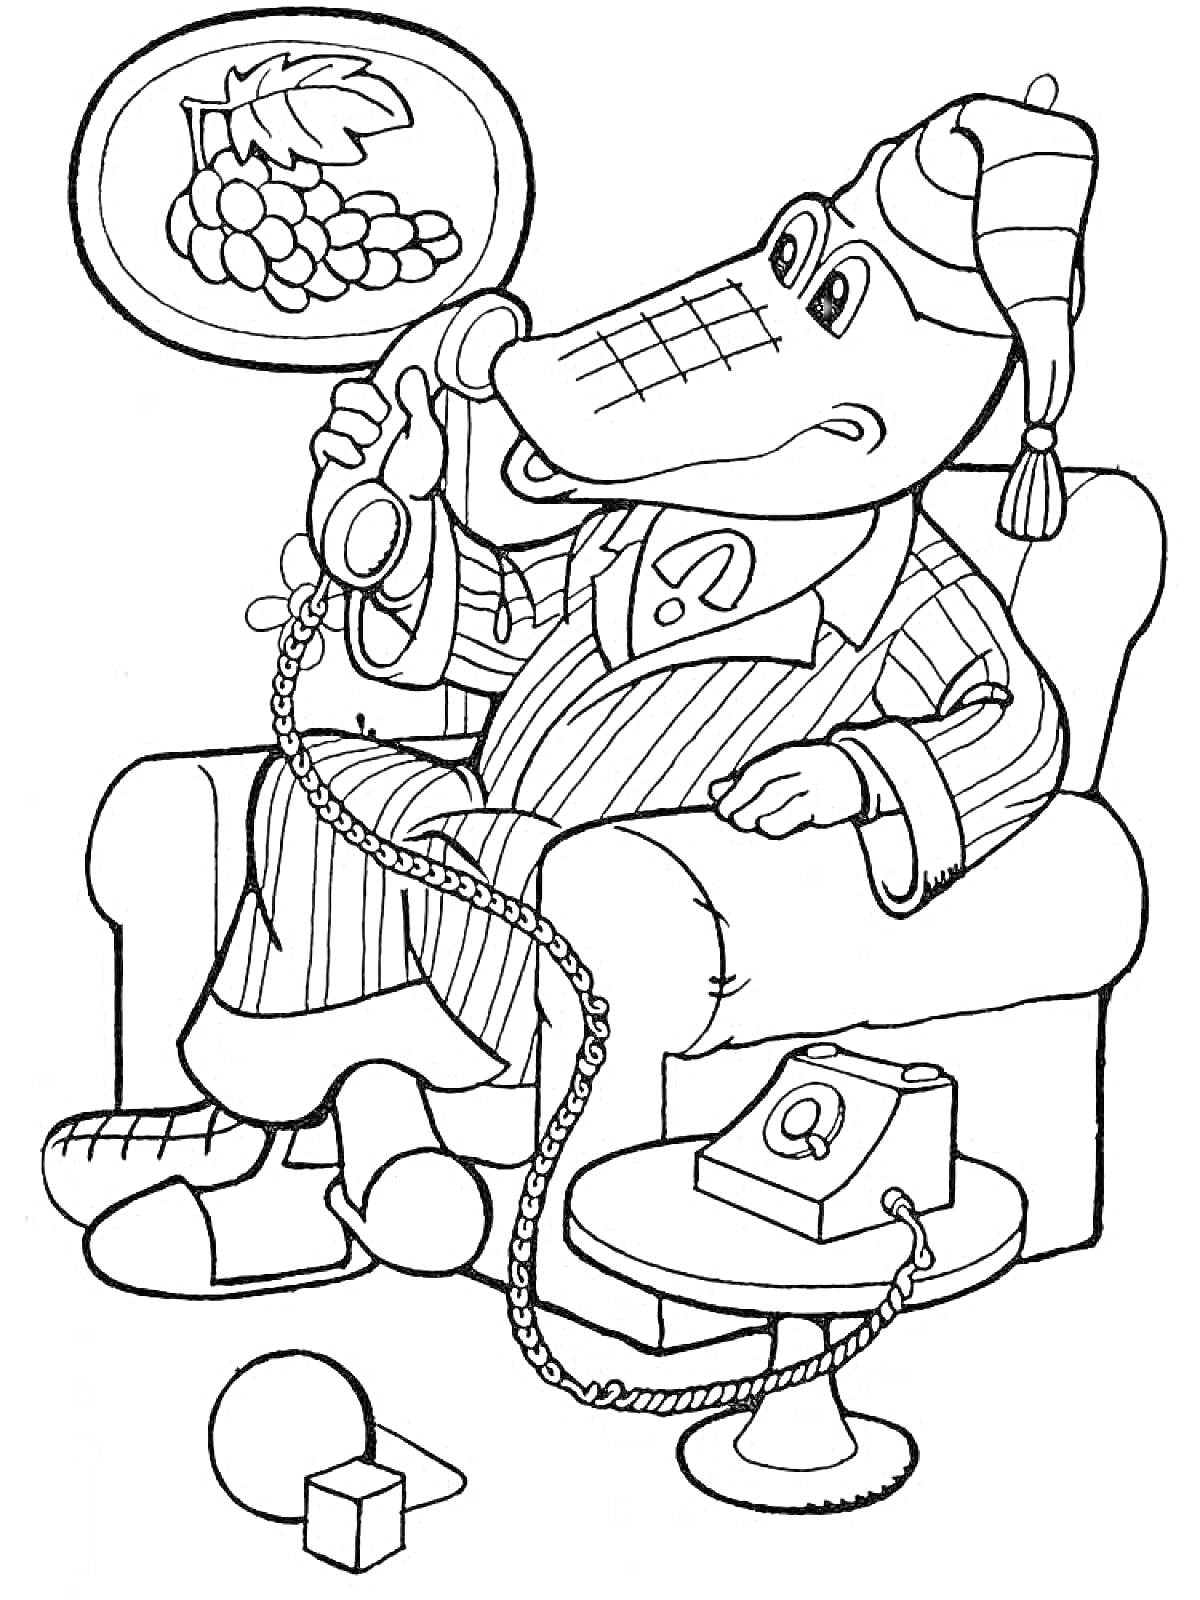 Раскраска Крокодил Гена в кресле с телефоном и детскими игрушками